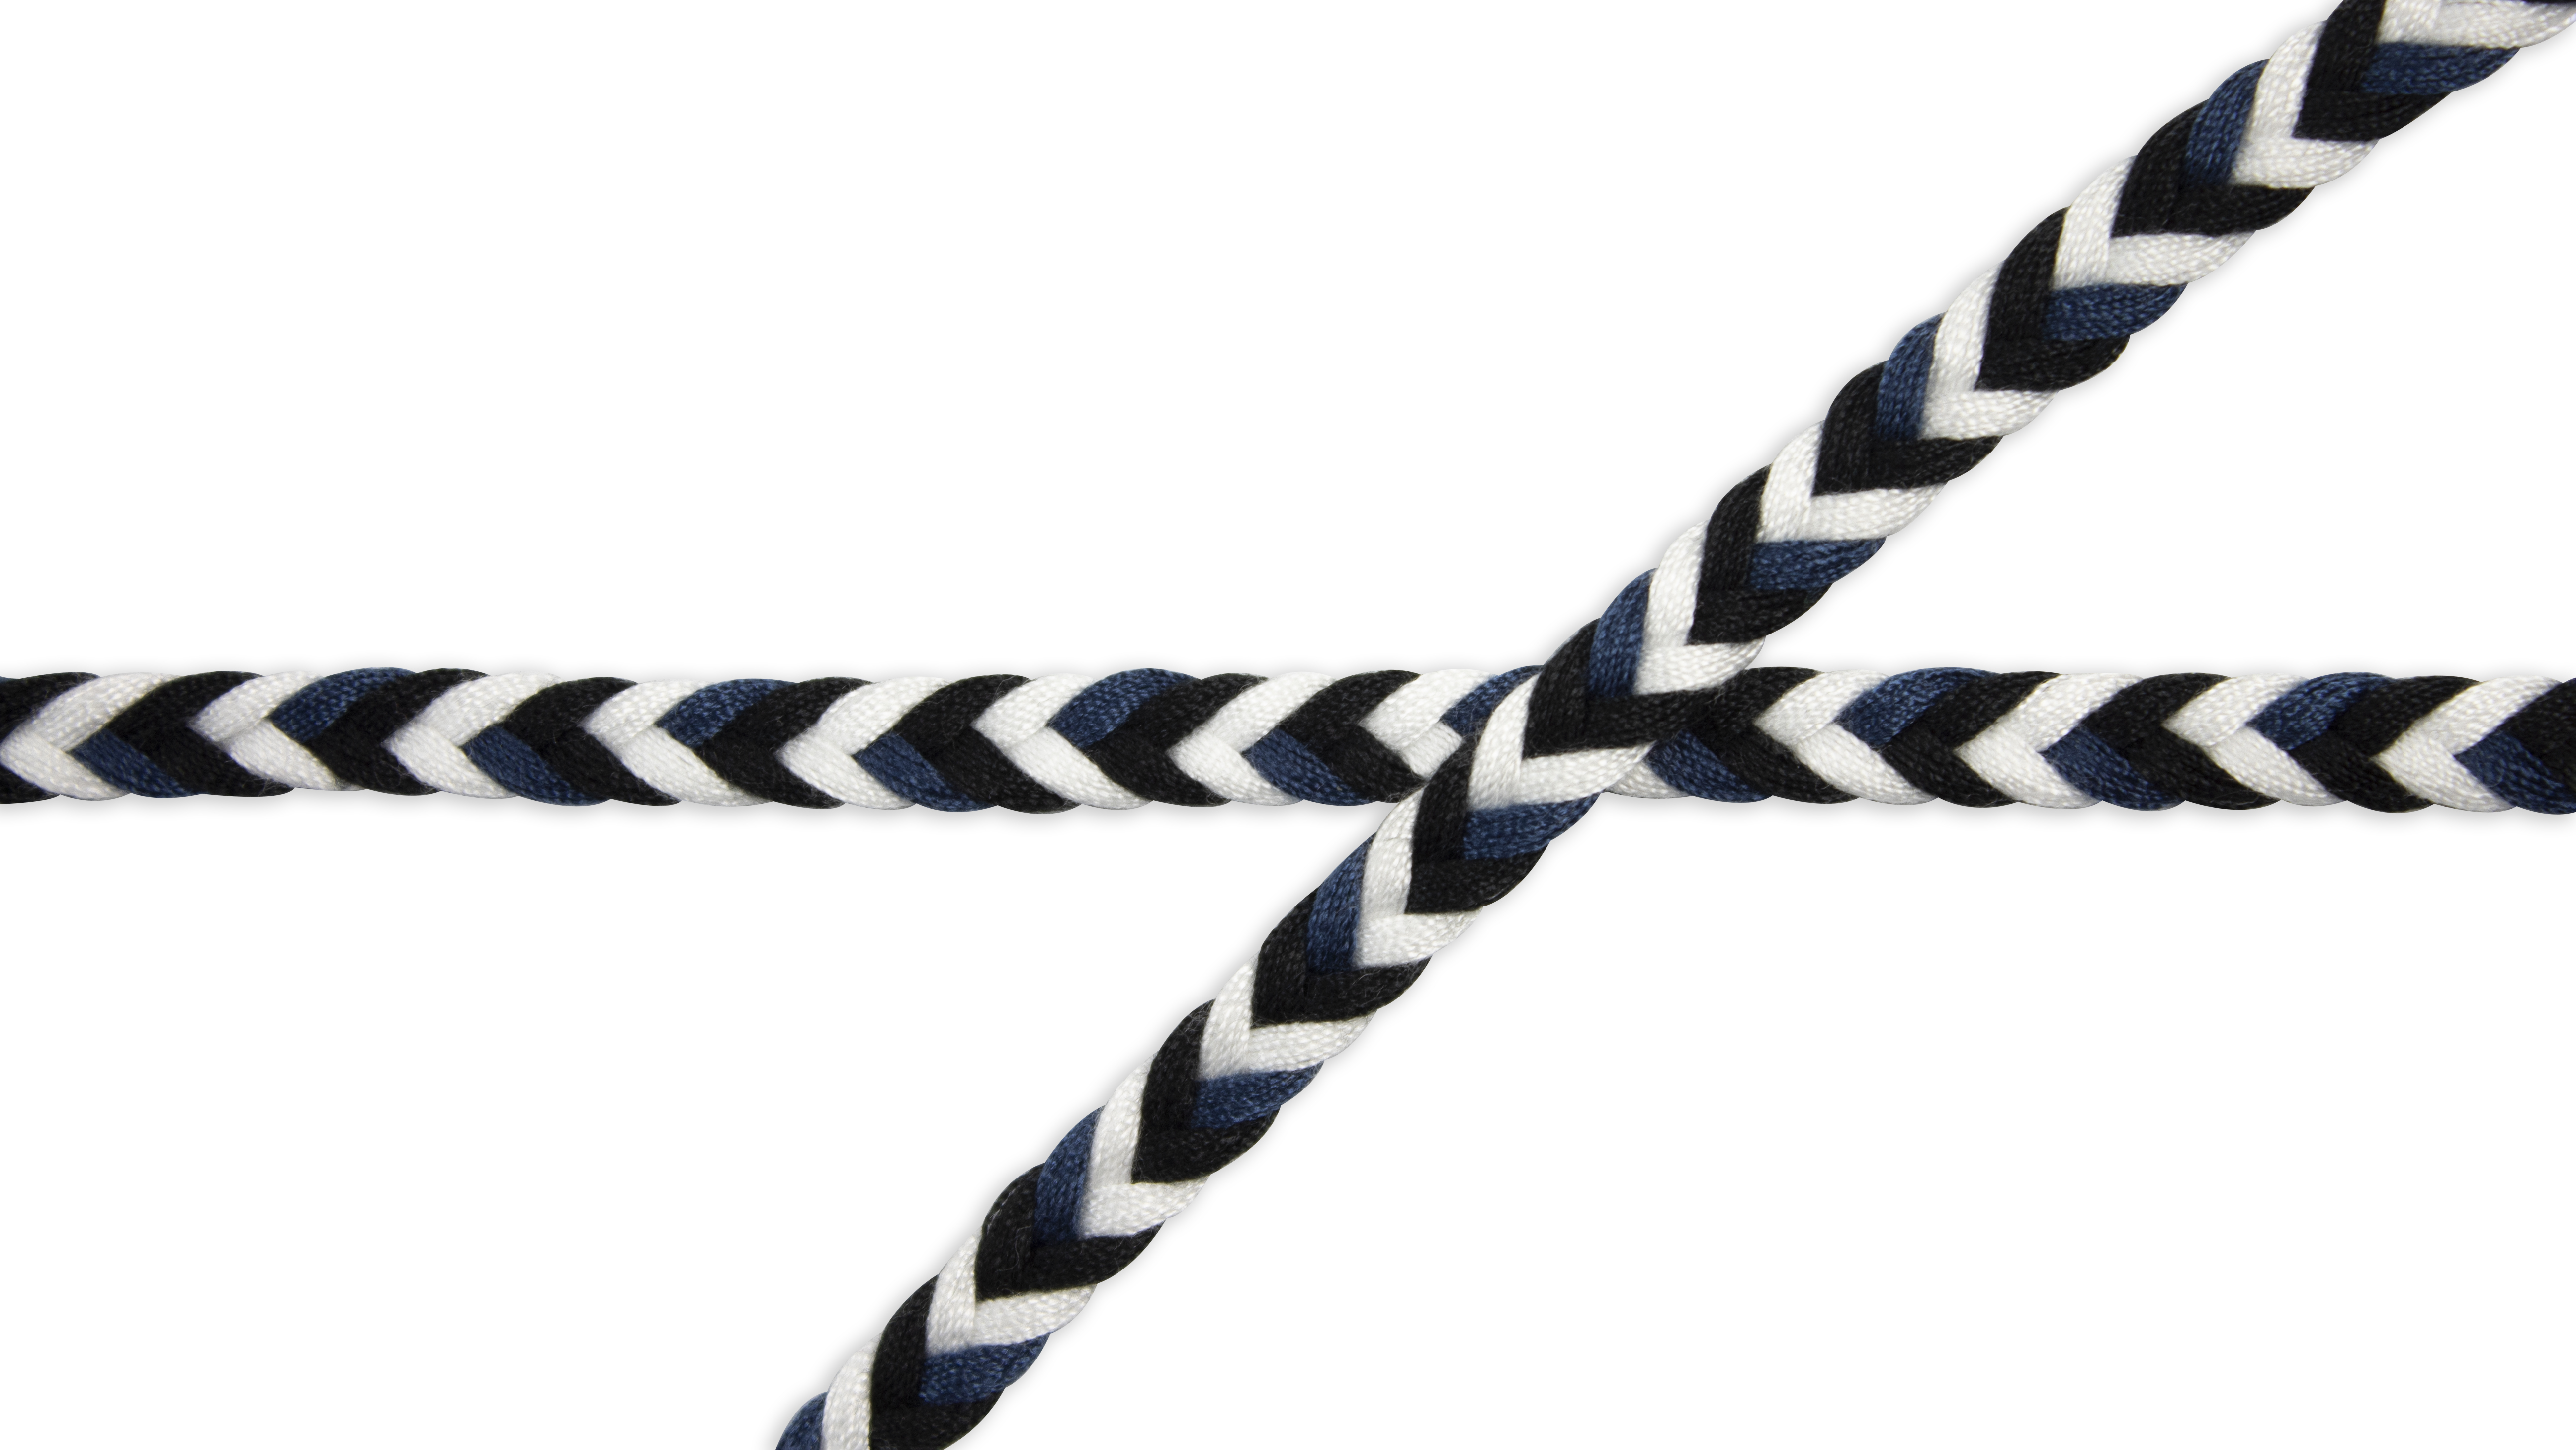 Kordel geflochten Baumwolle 8mm flach schwarz, dunkelblau, weiß (569)